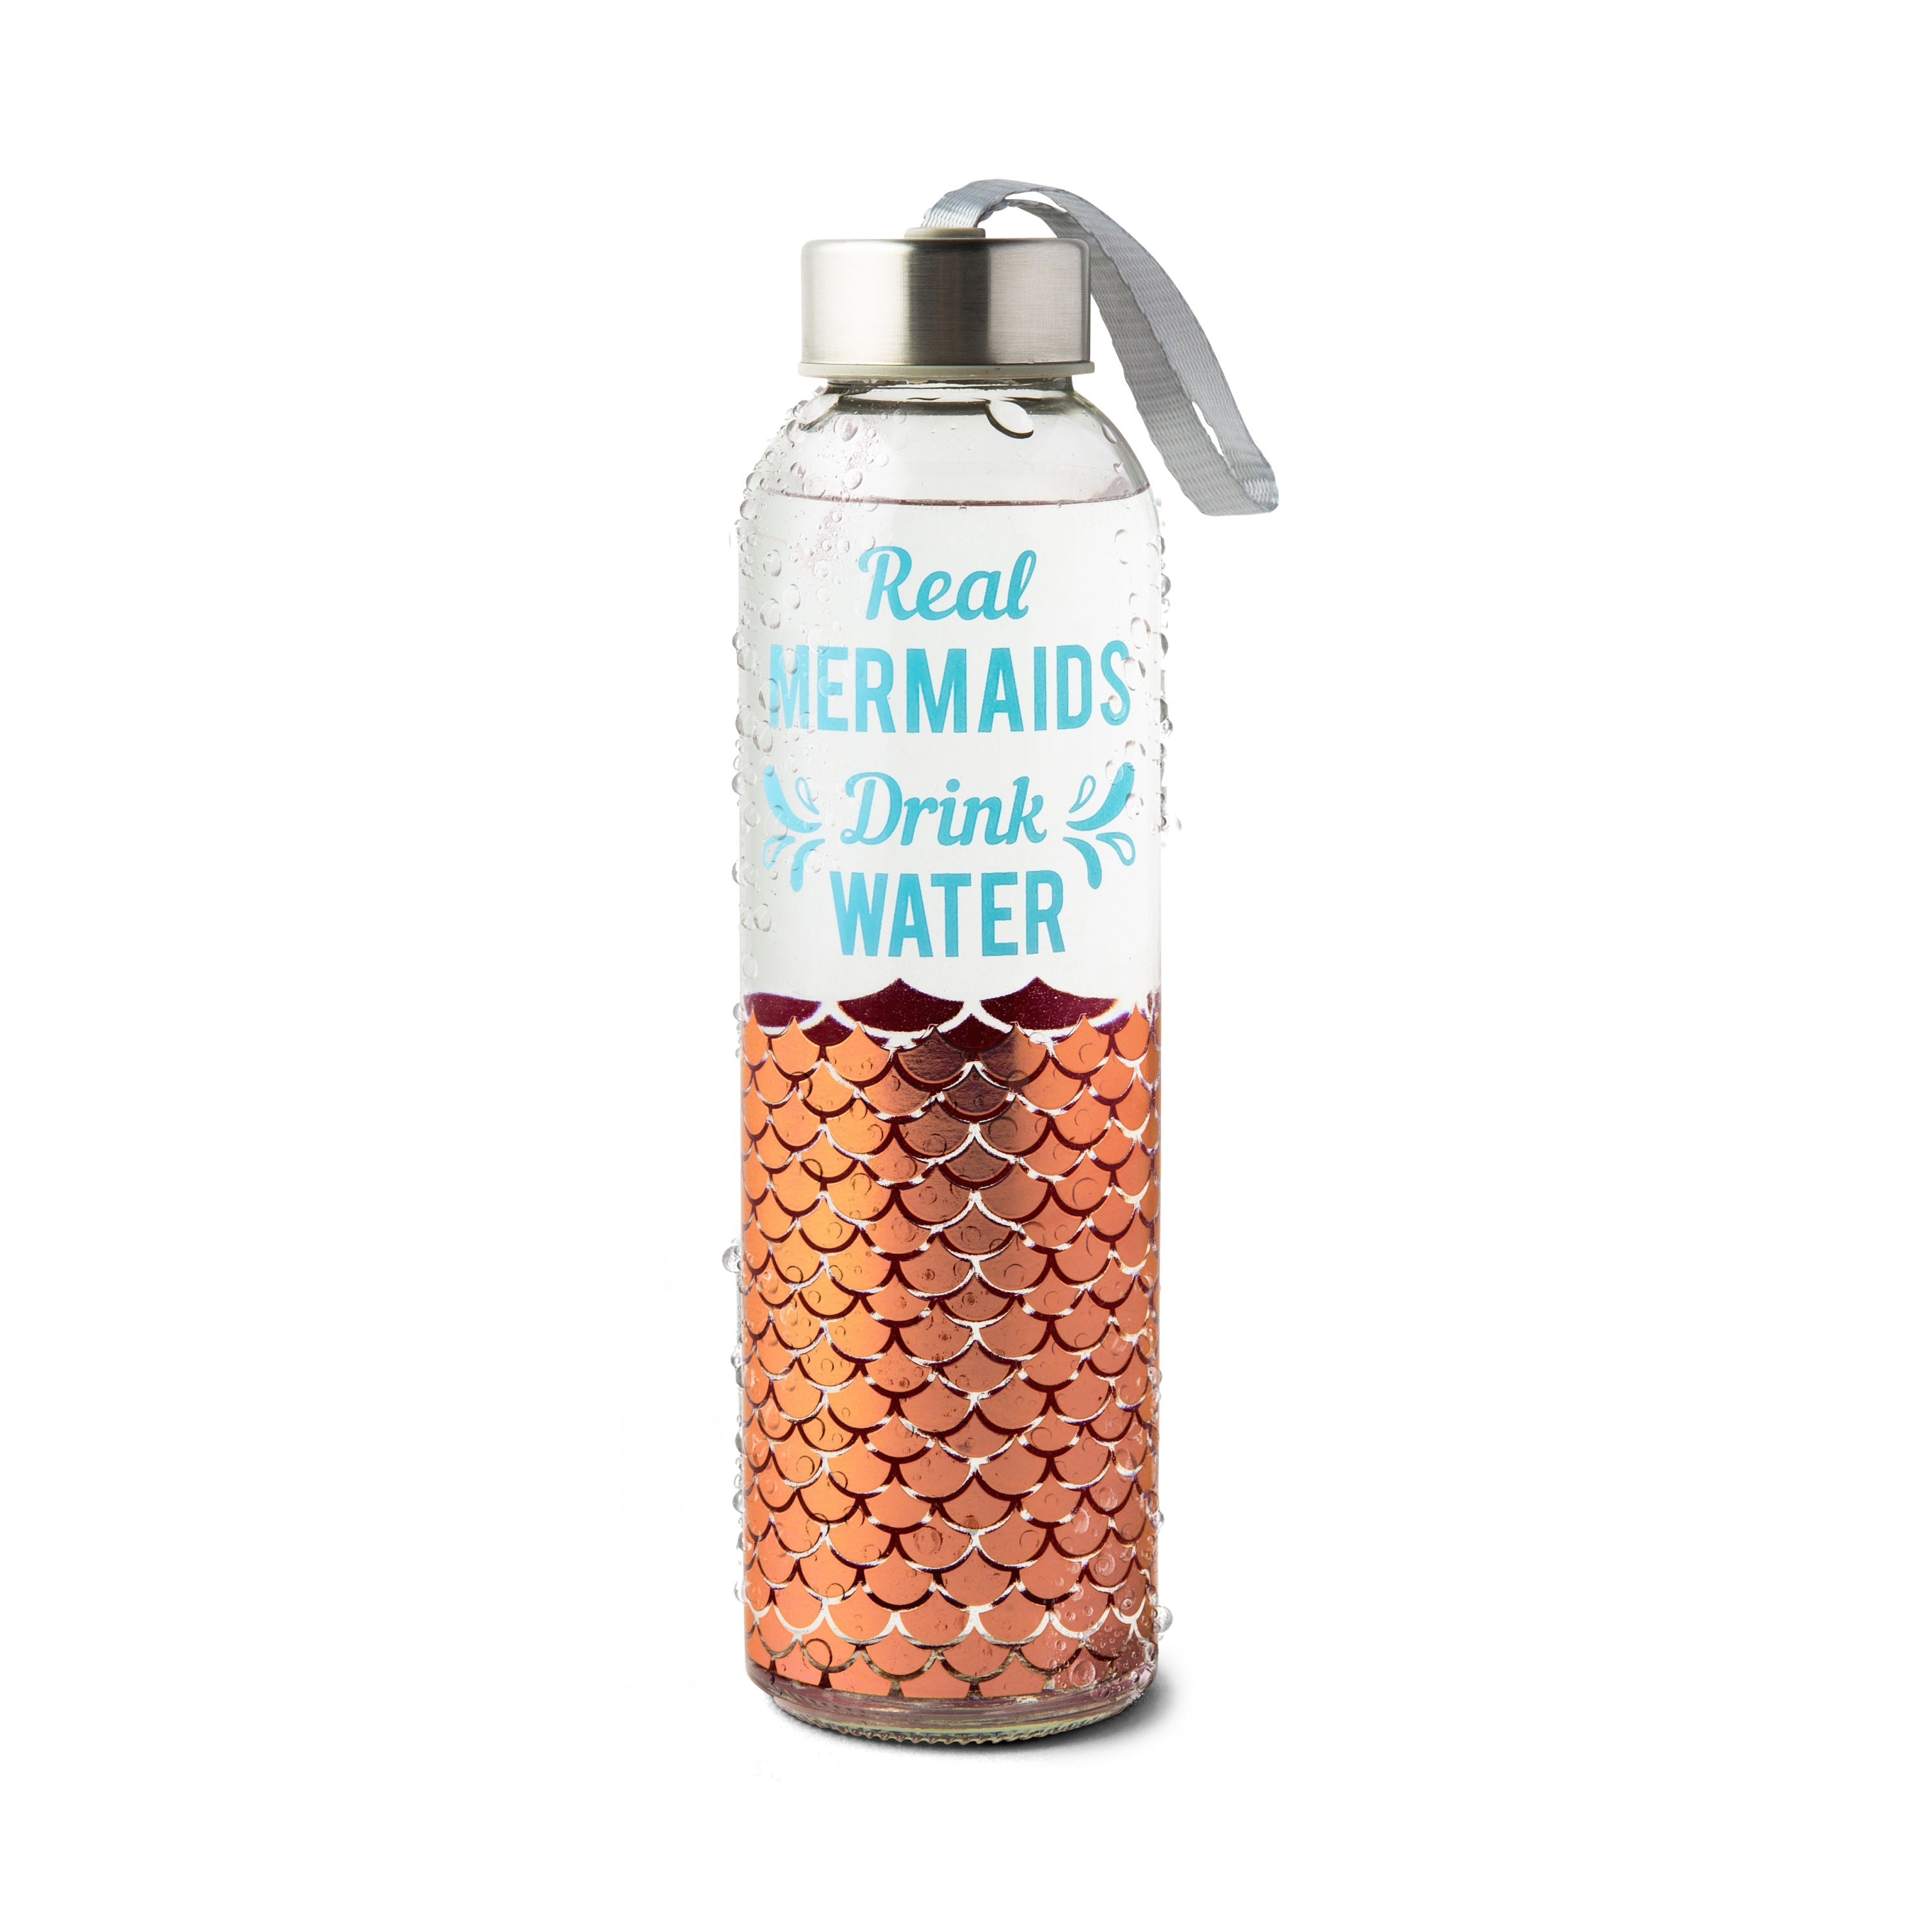 Mermaids Glass Water Bottle